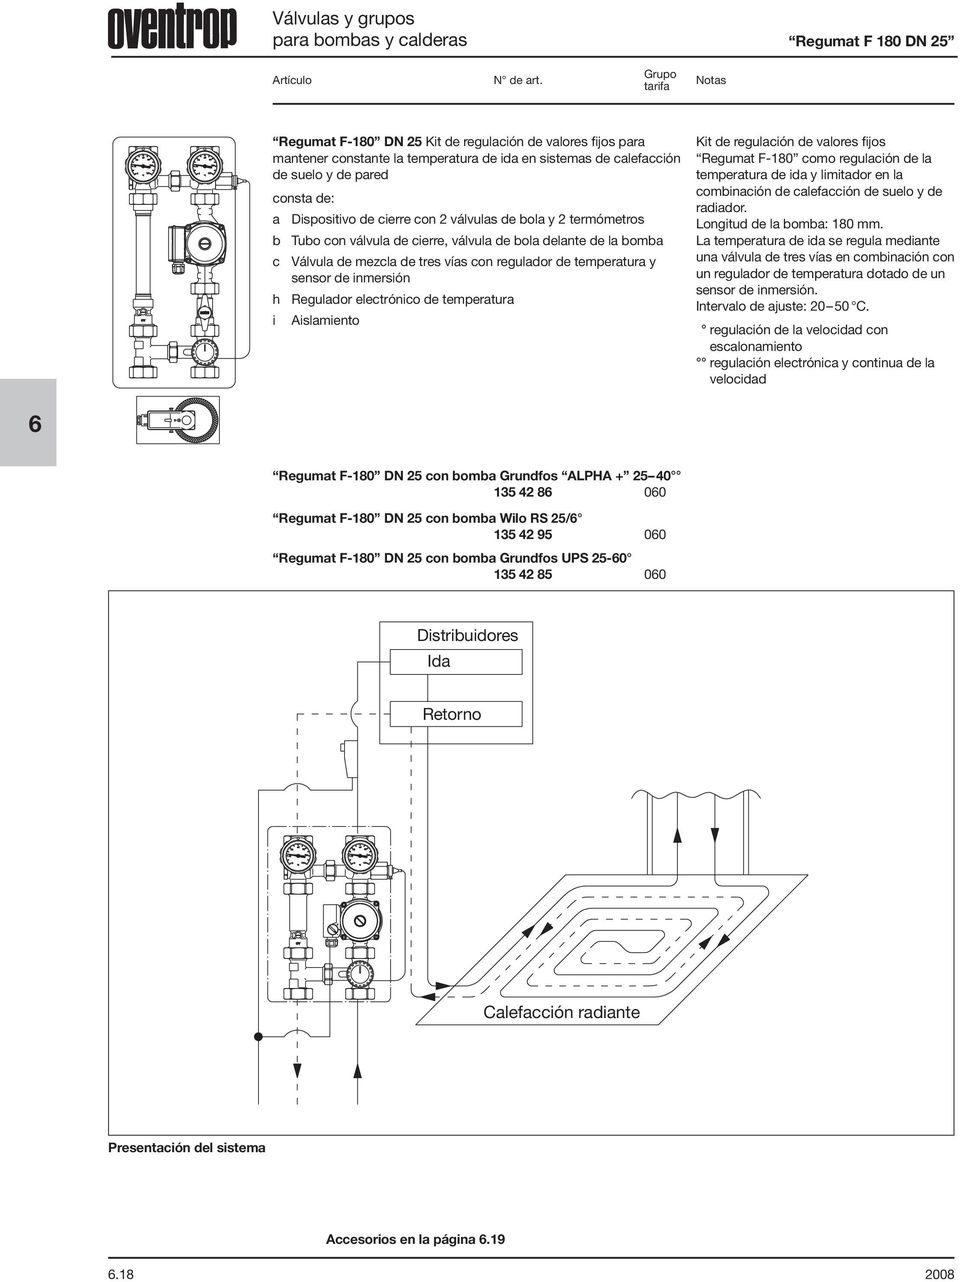 temperatura Kit de regulación de valores fijos F-180 como regulación de la temperatura de ida y limitador en la combinación de calefacción de suelo y de radiador. Longitud de la bomba: 180 mm.